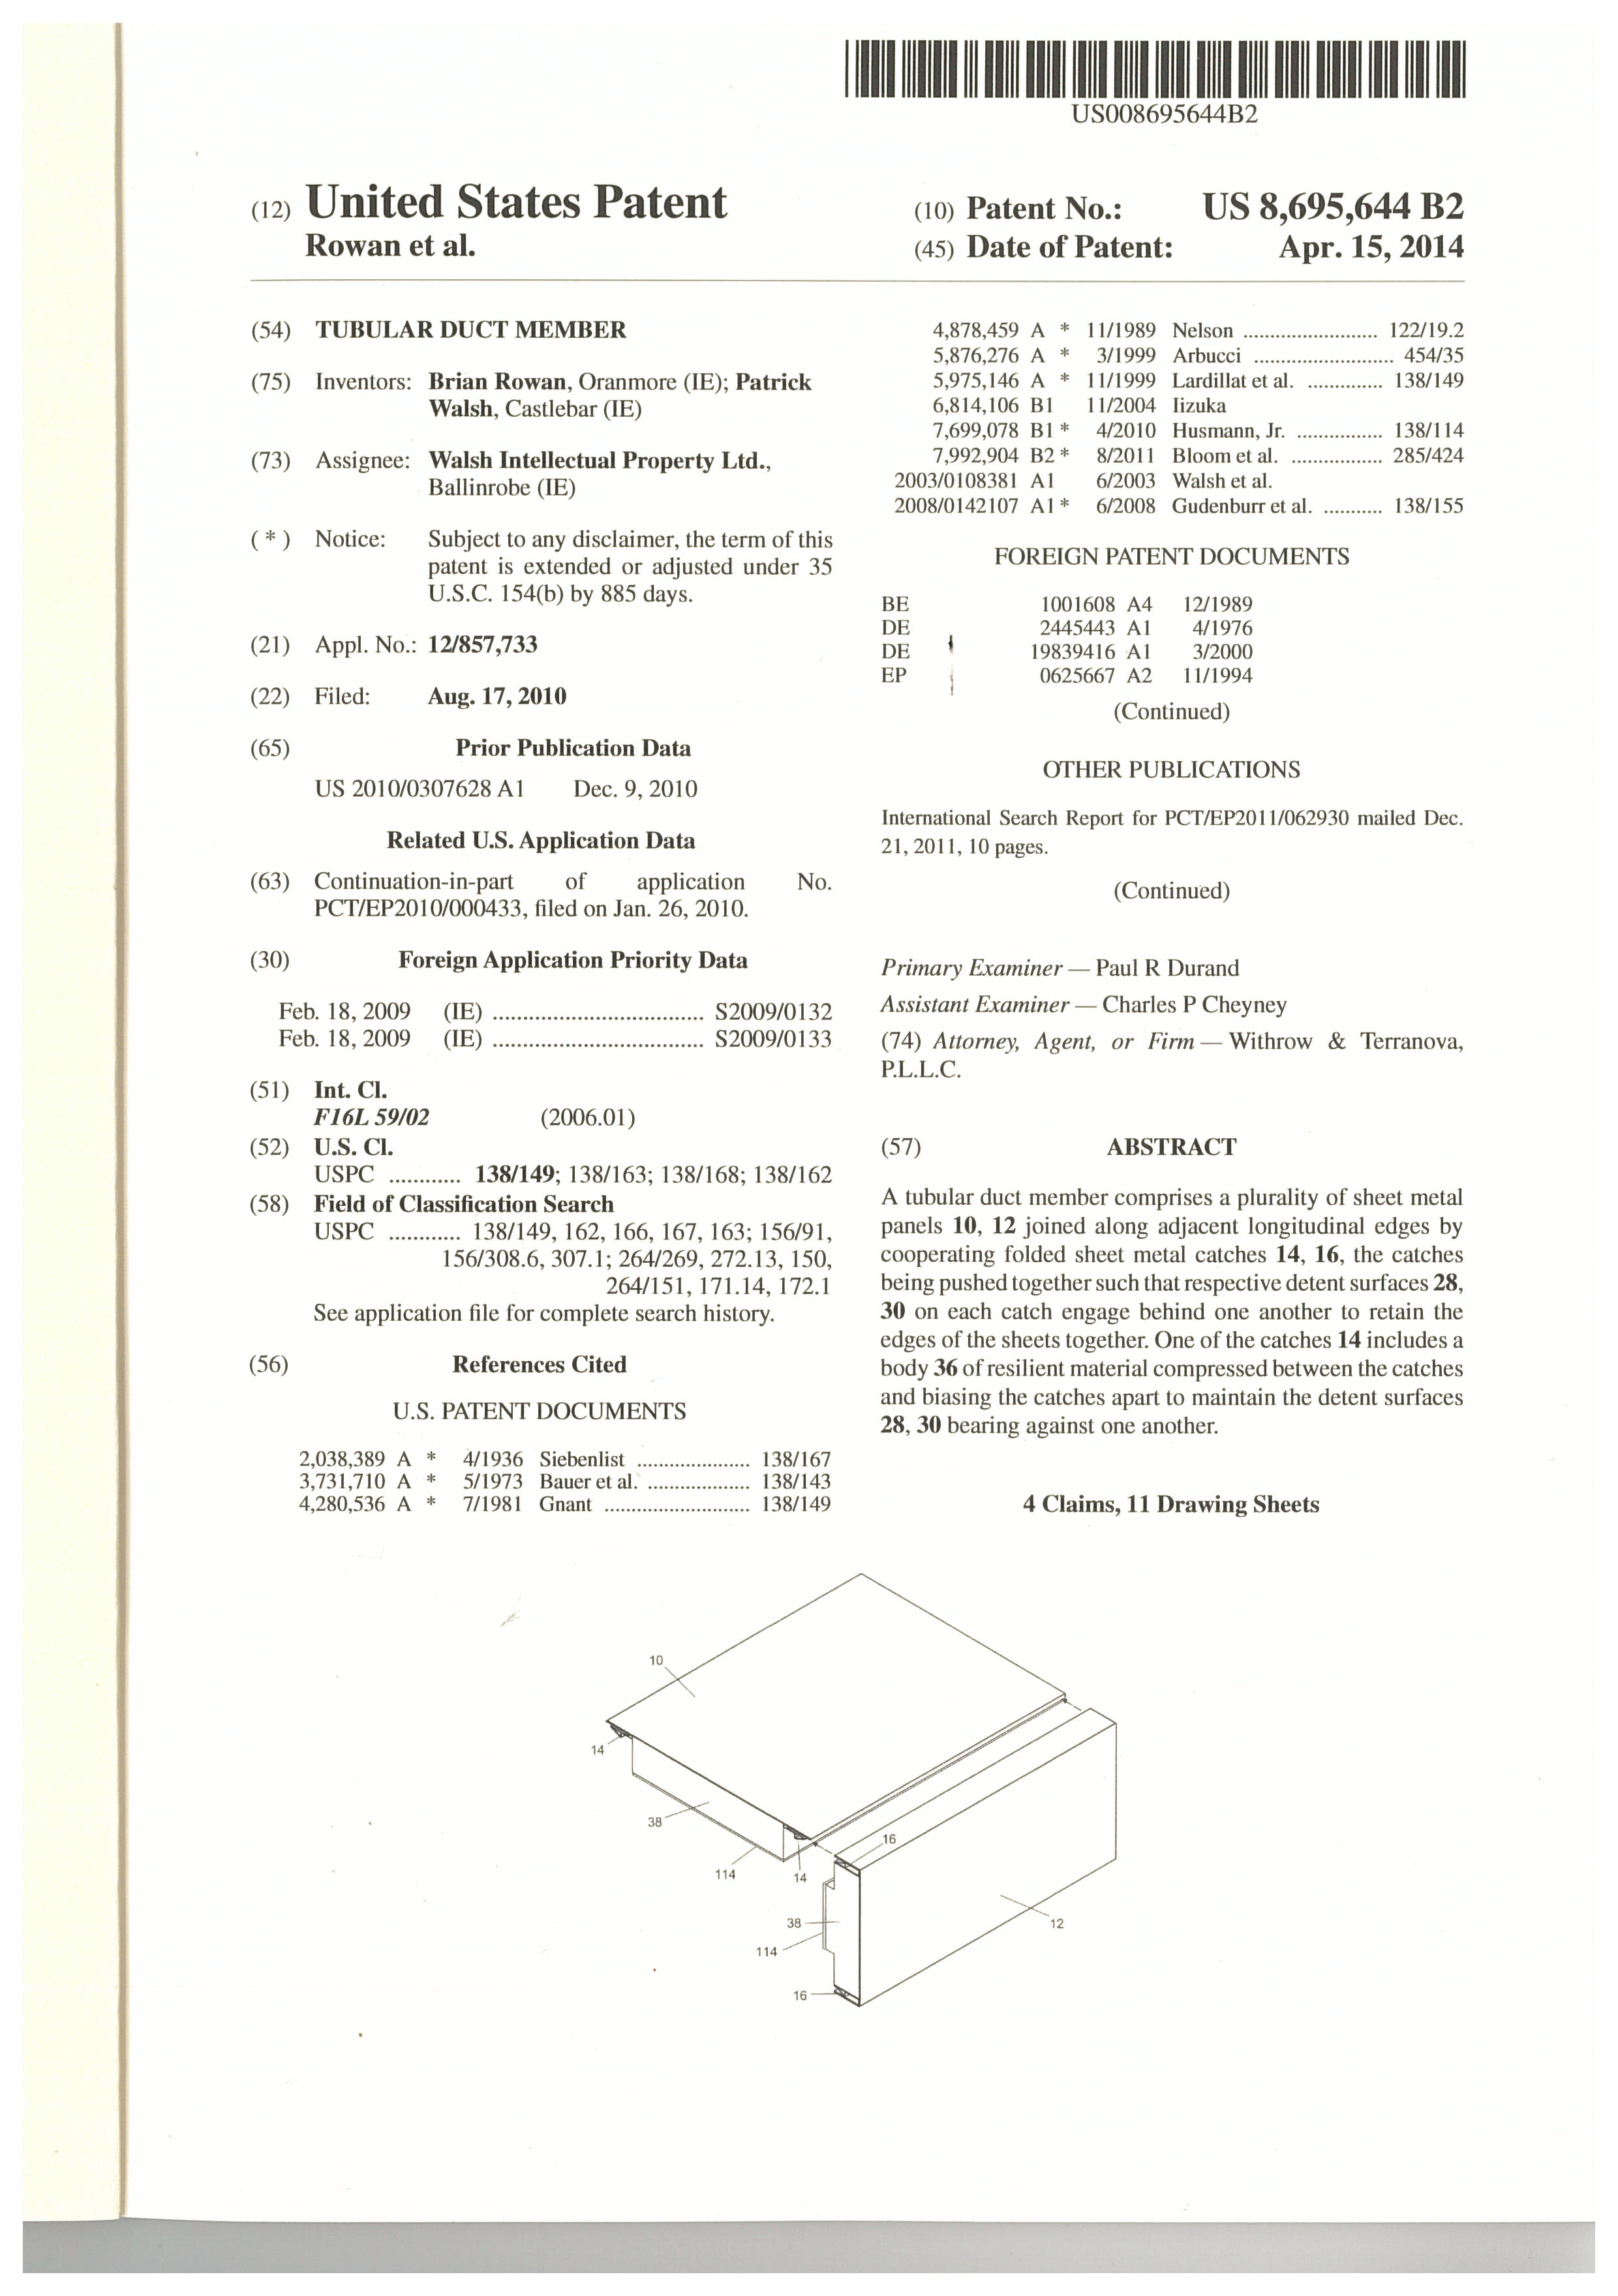 US Patent 8695644